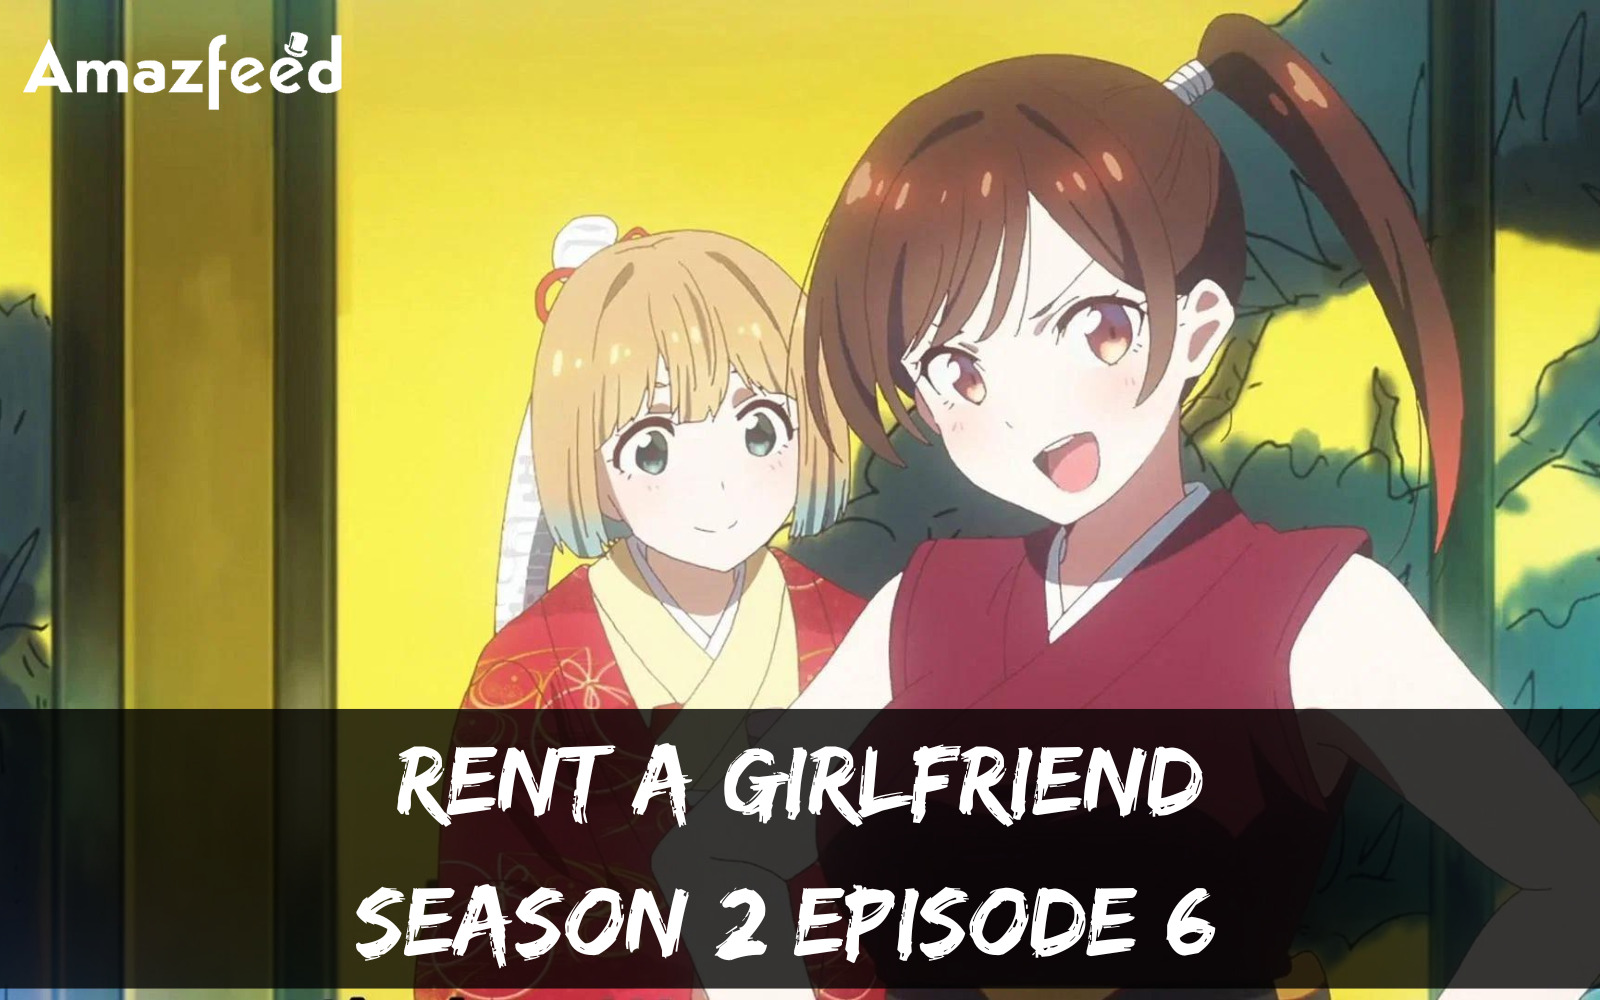 rent a girlfriend season 2 episode 6 release date